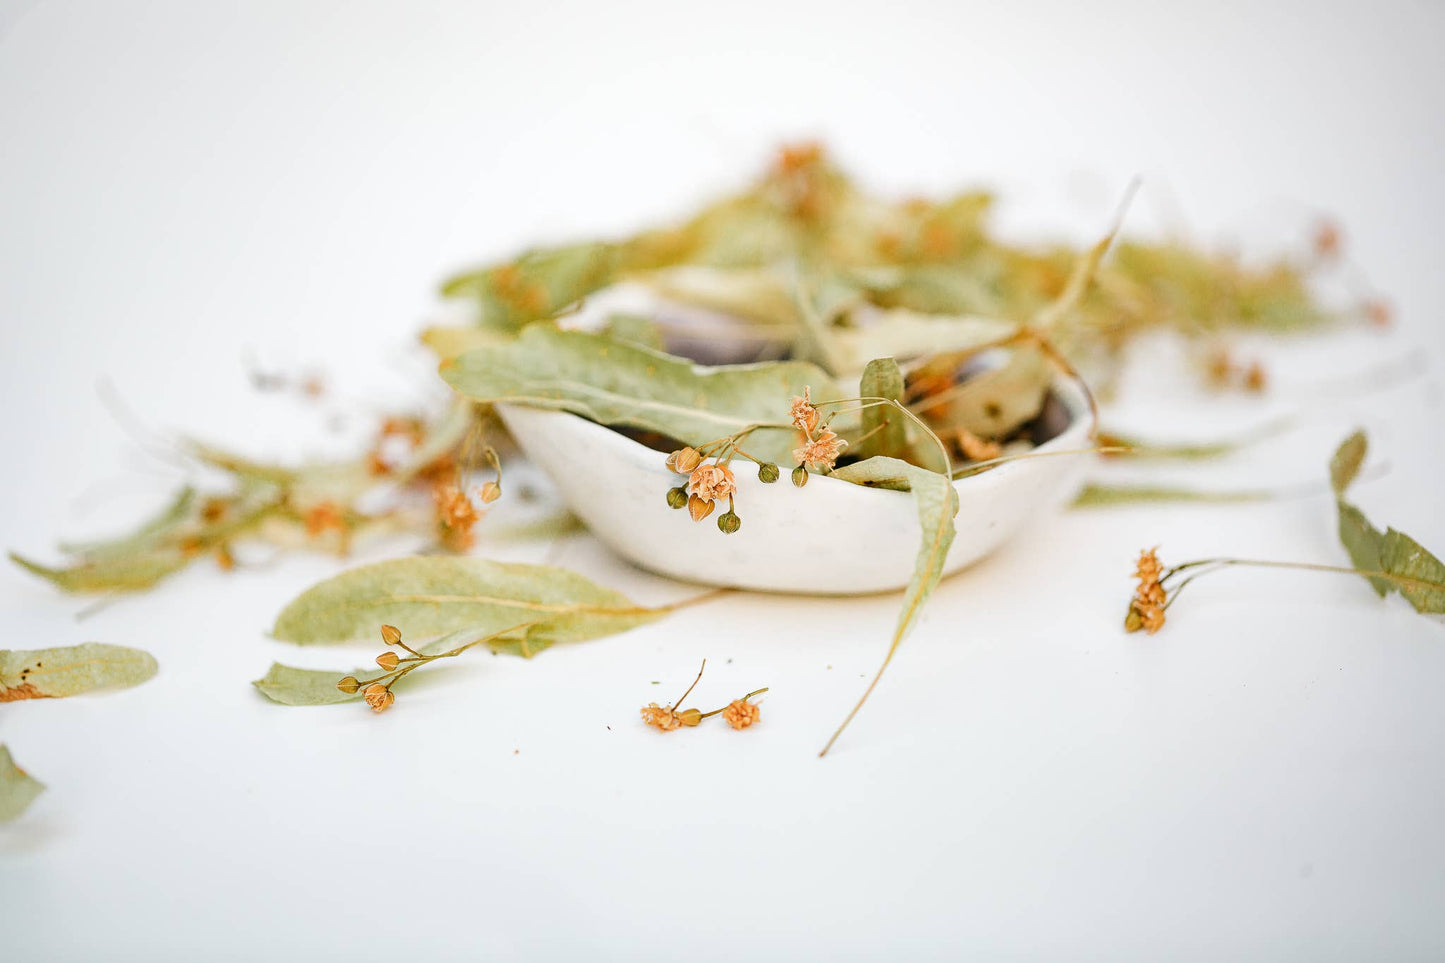 Linden Tea - honey tea, certified organic Nordic herbal tea